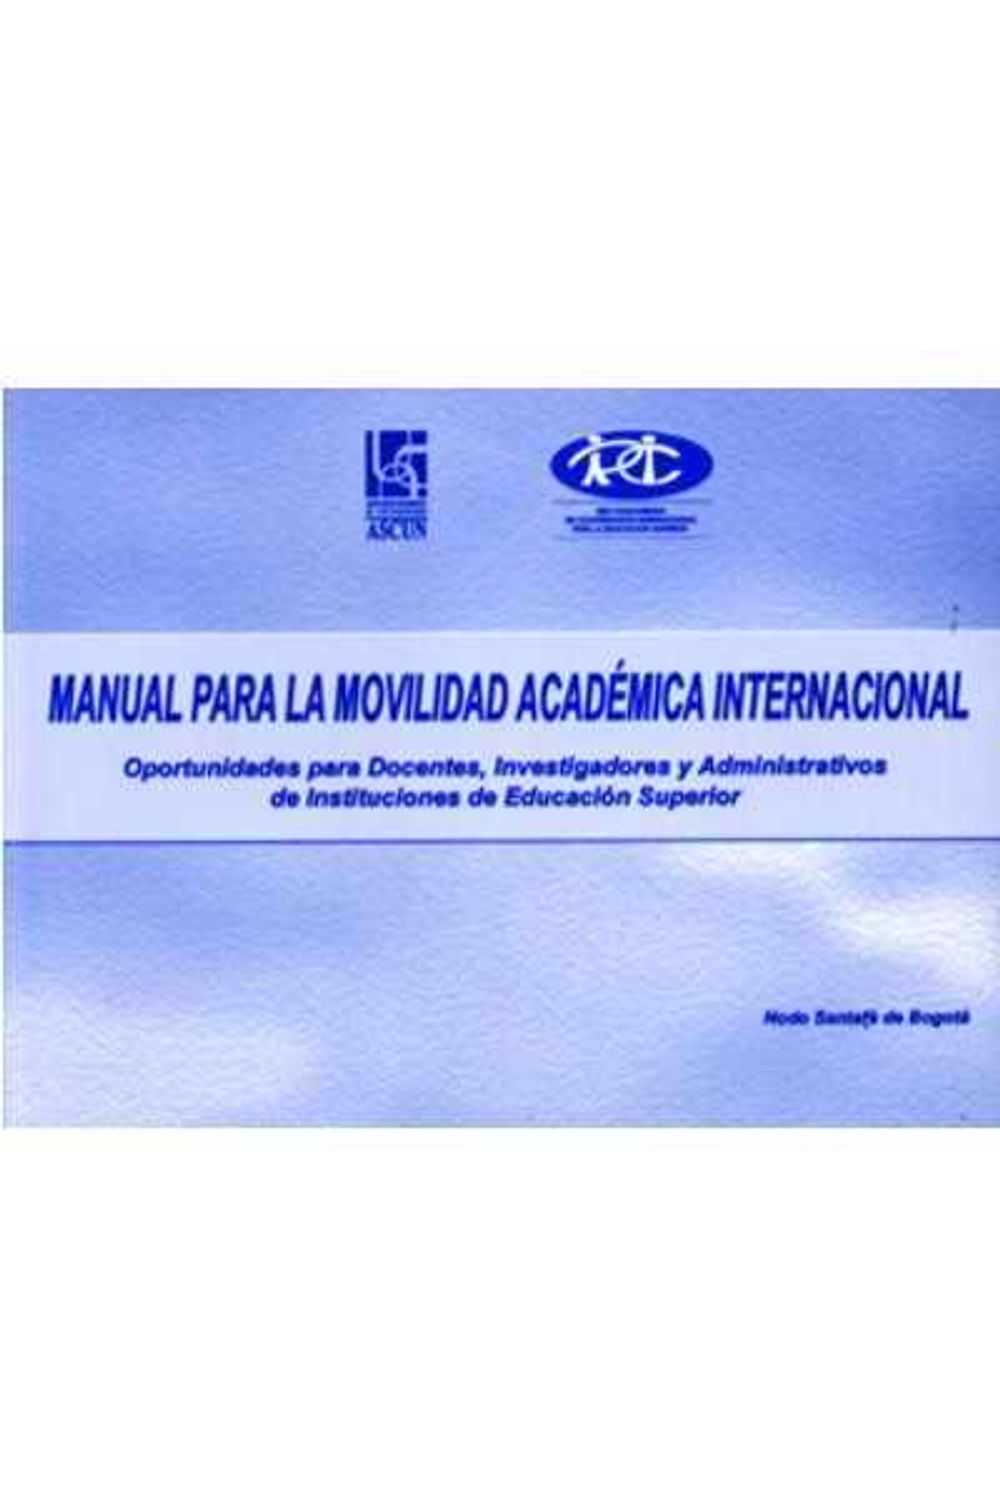 19_manual_para_la_movilidad